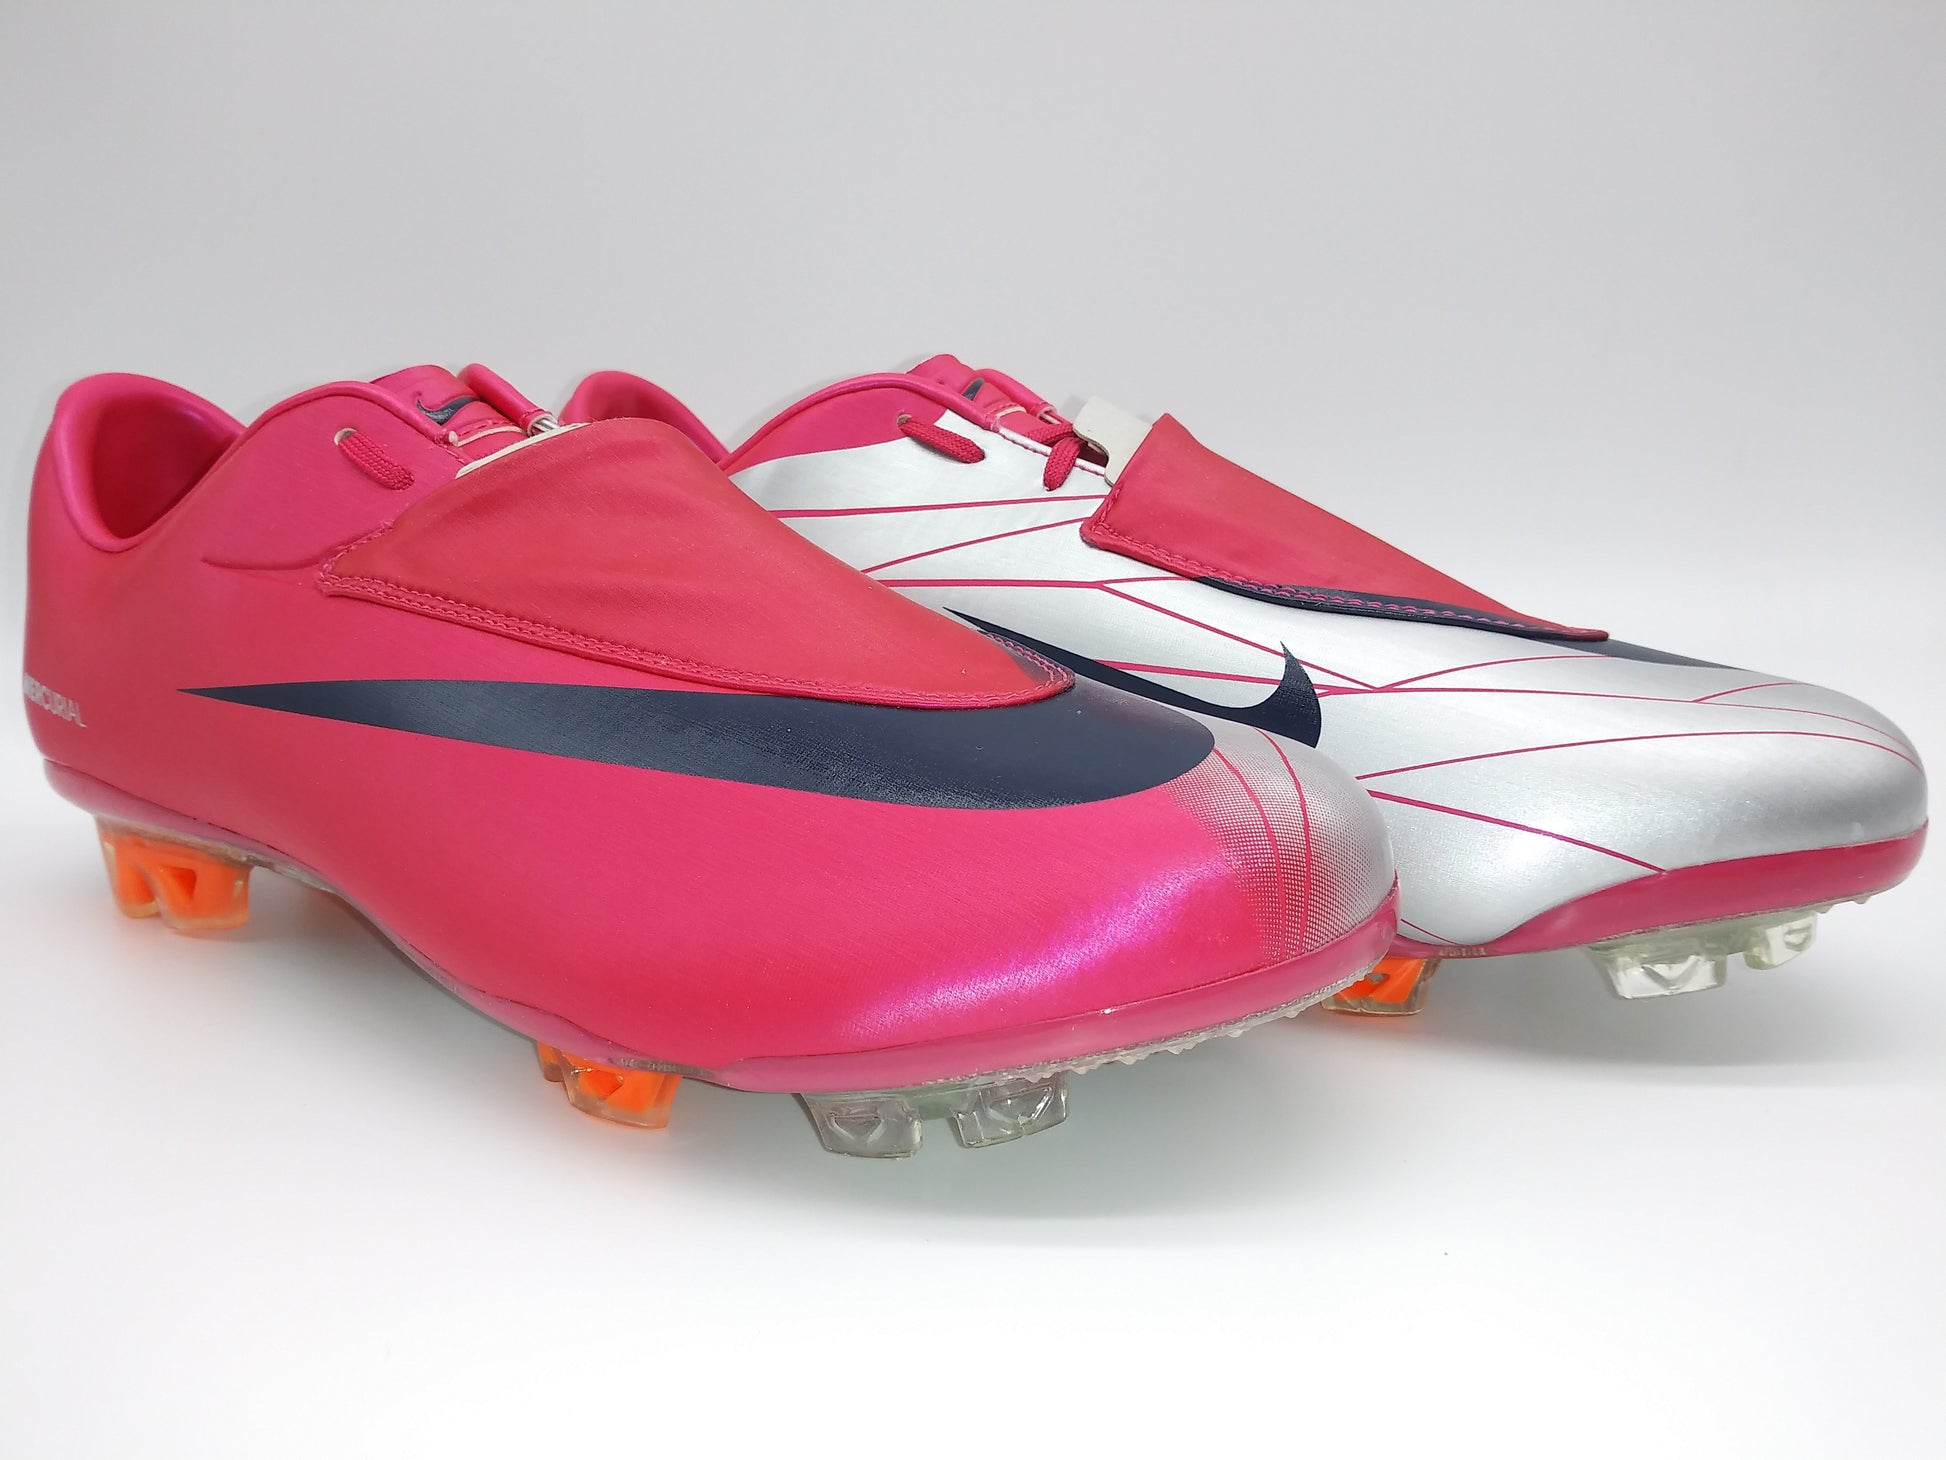 Opuesto apasionado Traición Nike Mercurial Vapor VI FG Pink Silver – Villegas Footwear